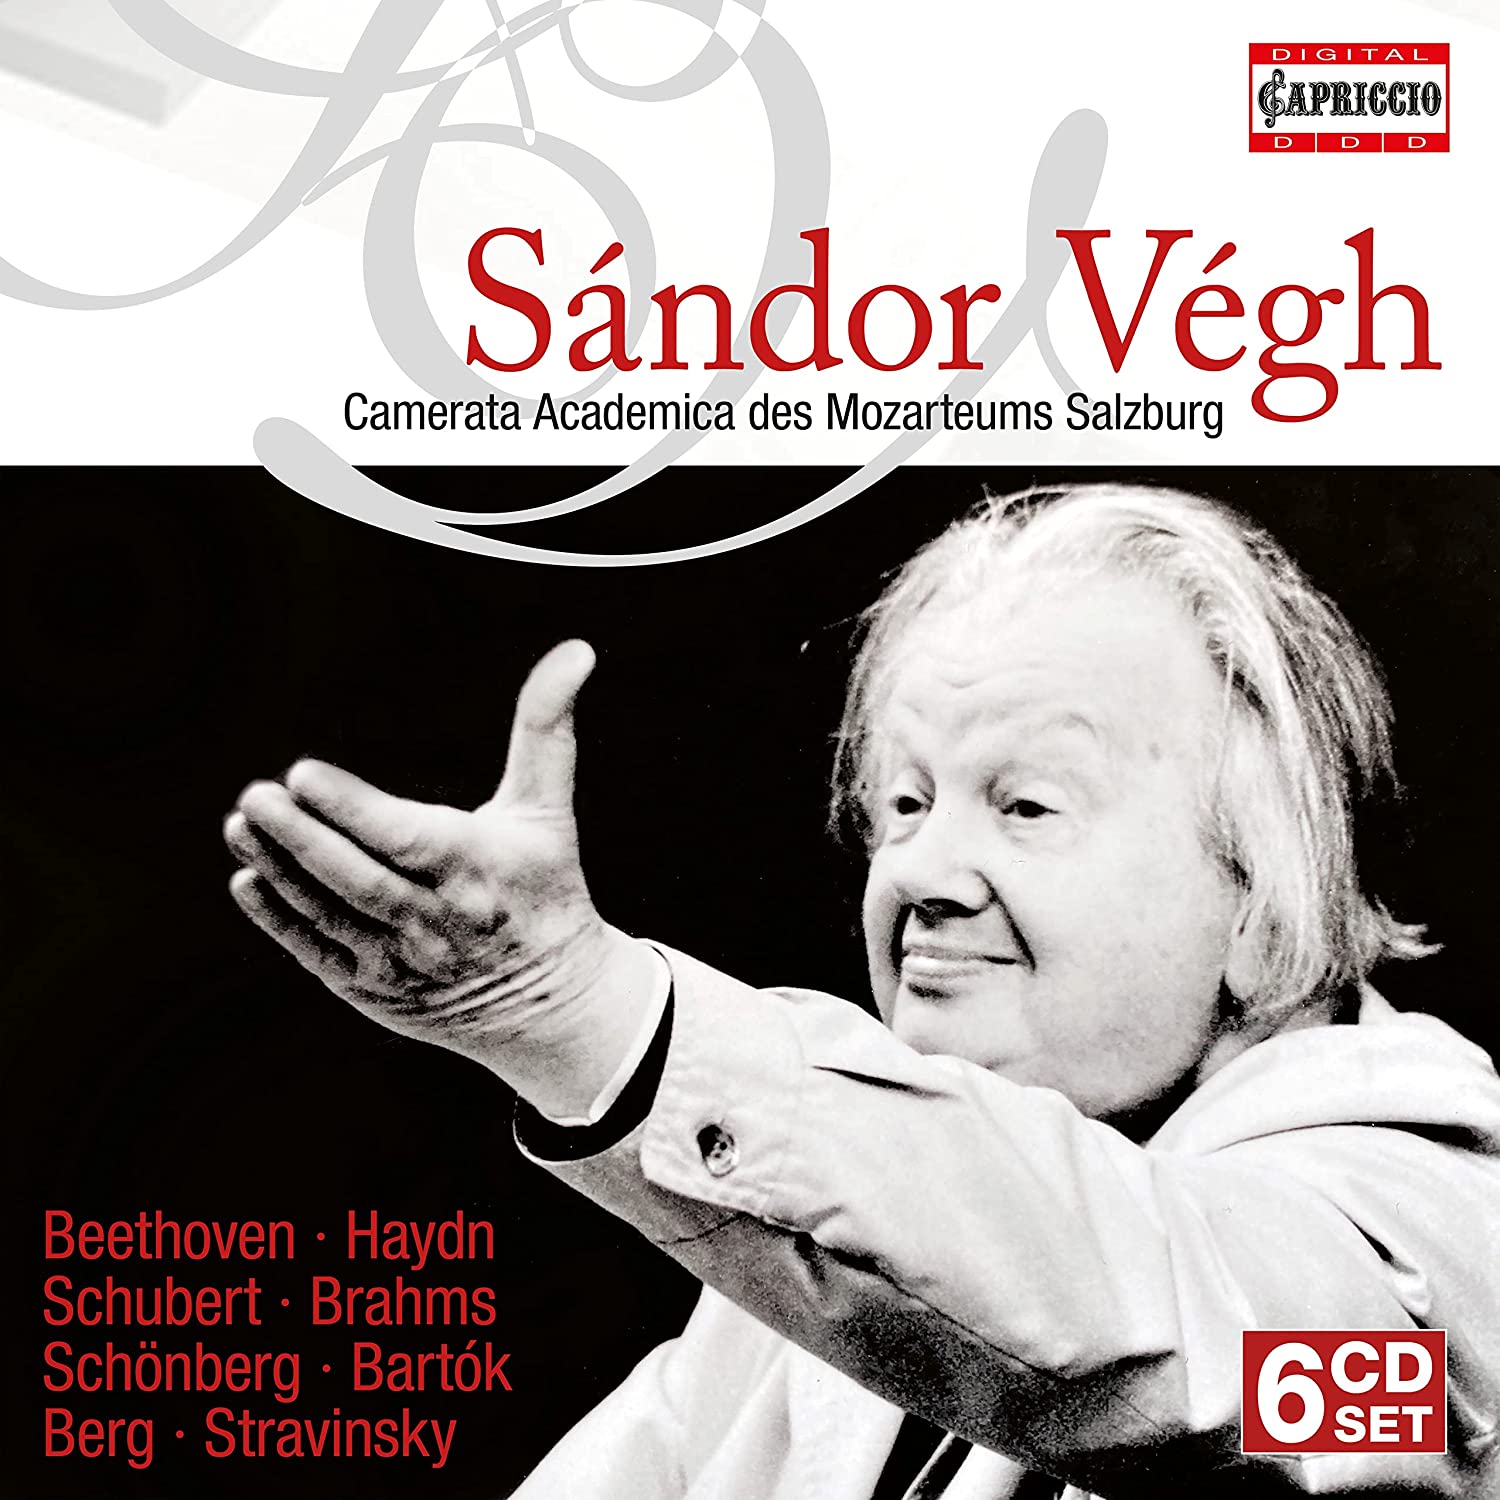 Audio Cd Sandor Vegh: Dirigiert Beethoven Haydn Schubert Brahms Schonberg Bartok 6 Cd NUOVO SIGILLATO EDIZIONE DEL SUBITO DISPONIBILE